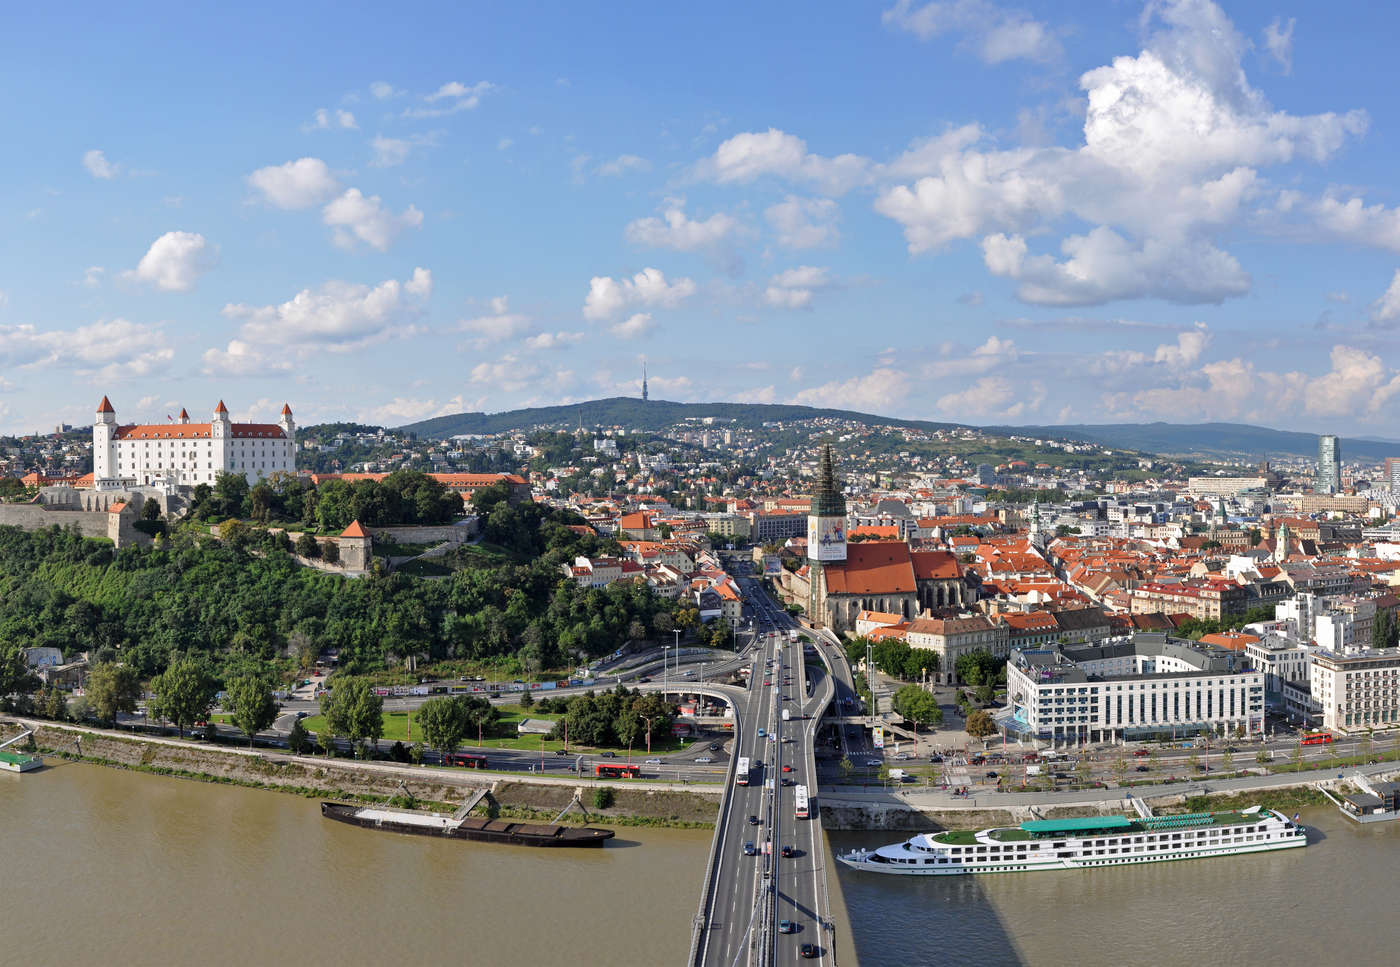 Ontdek jouw stukje Bratislava.